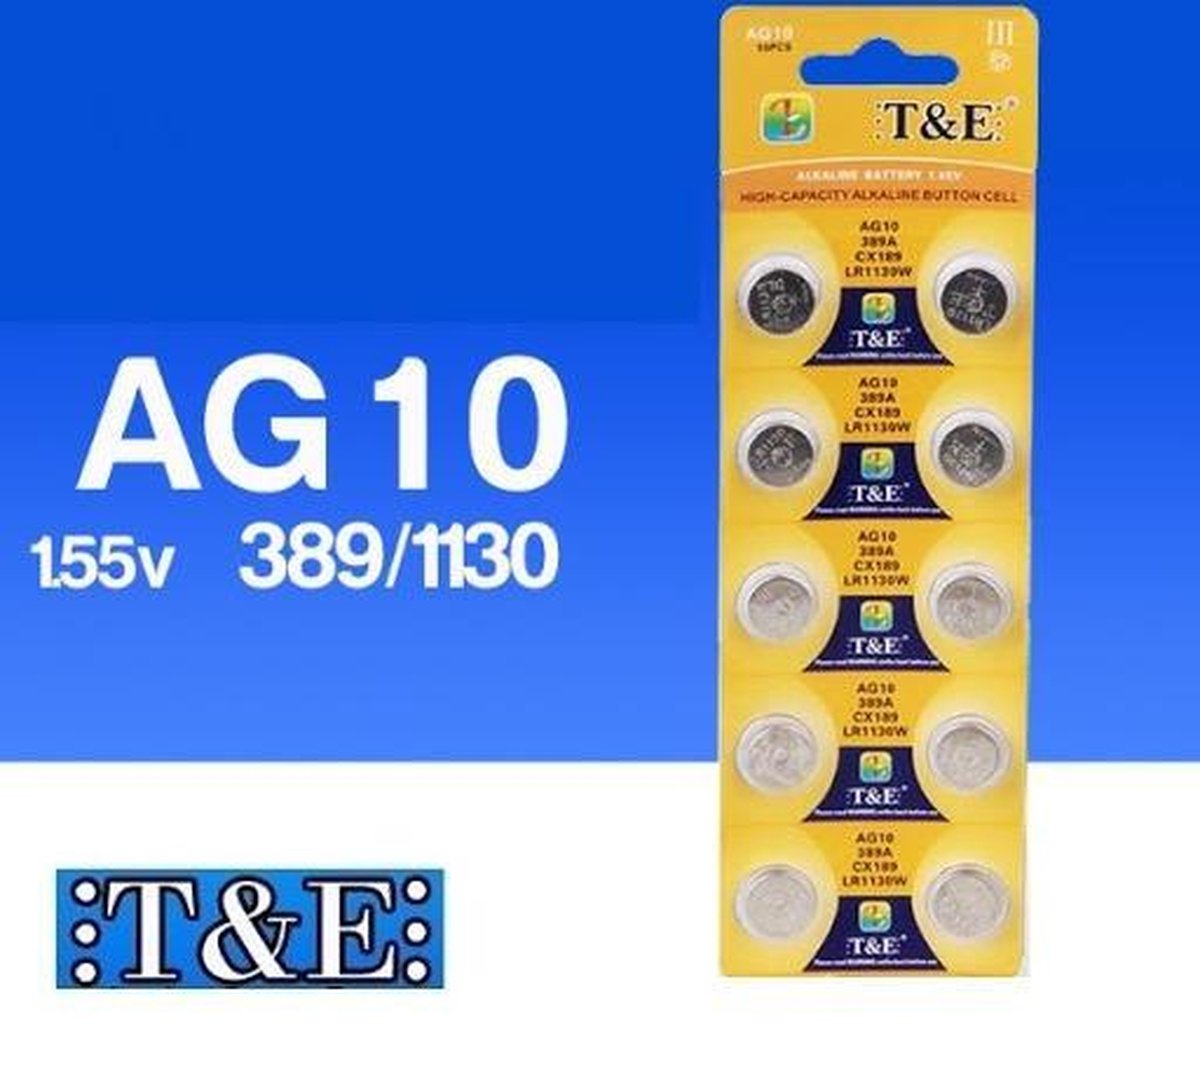 Batterijen AG10 Alkaline 10 stuks / knoopcel batterij / ook genoemd alsOok bekend als: AG10, LR54, LR-1130, G10A, V10GA, KA54, 189-1, RW89, L1131, GP89A, 189, 389A, 390A, AG10, D189, LR1130W, CX189